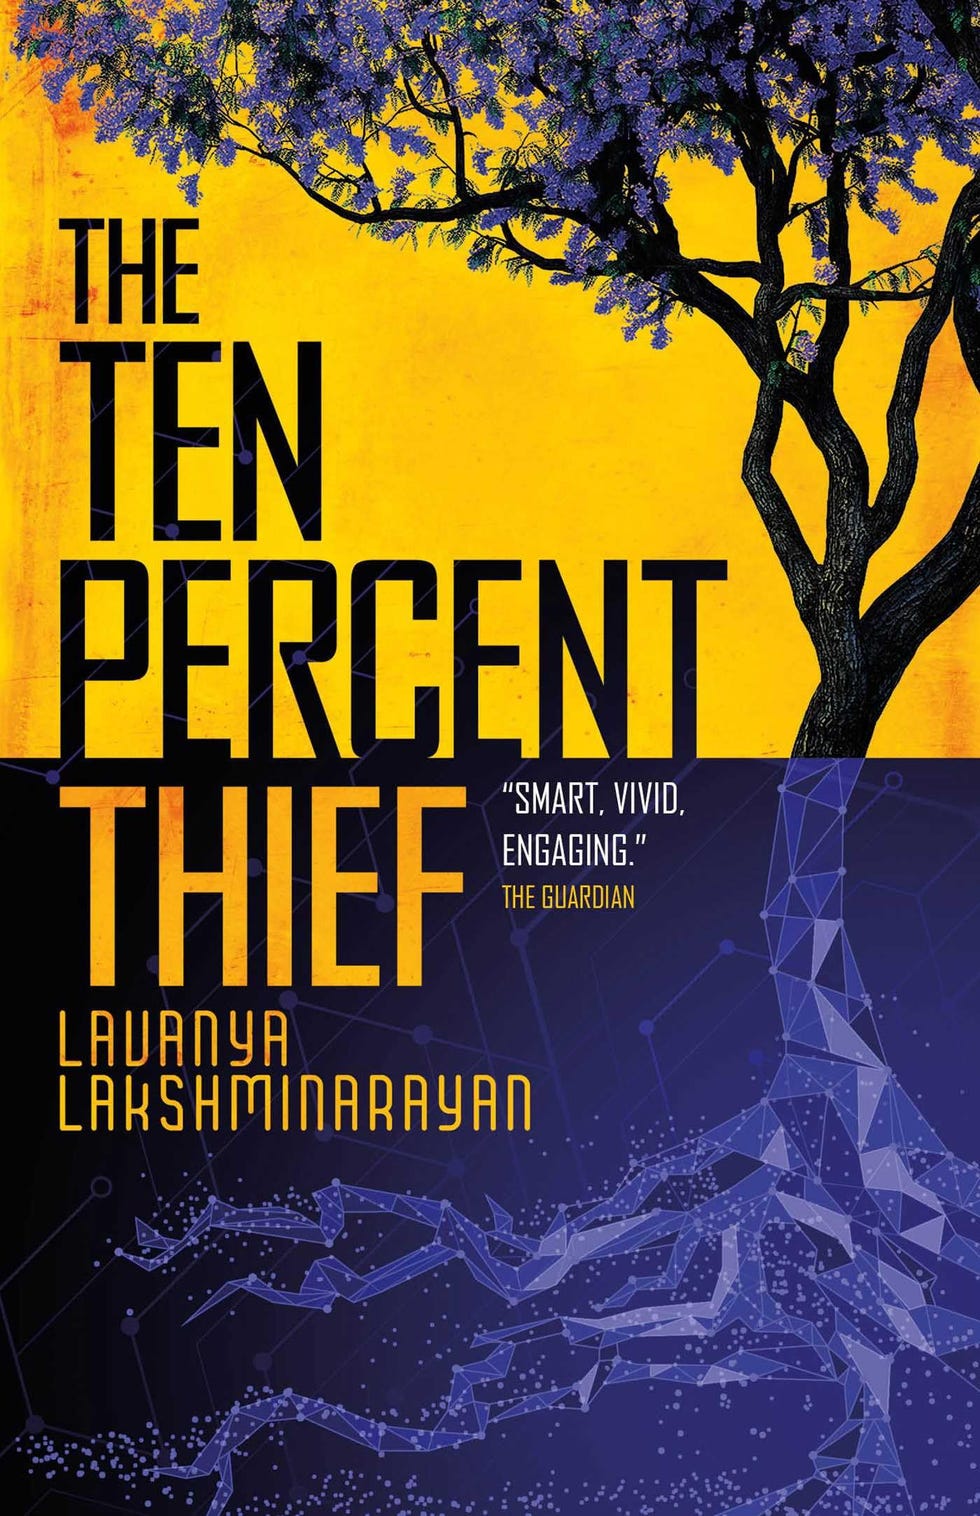 The Ten Percent Thief, by Lavanya Lakshminarayan